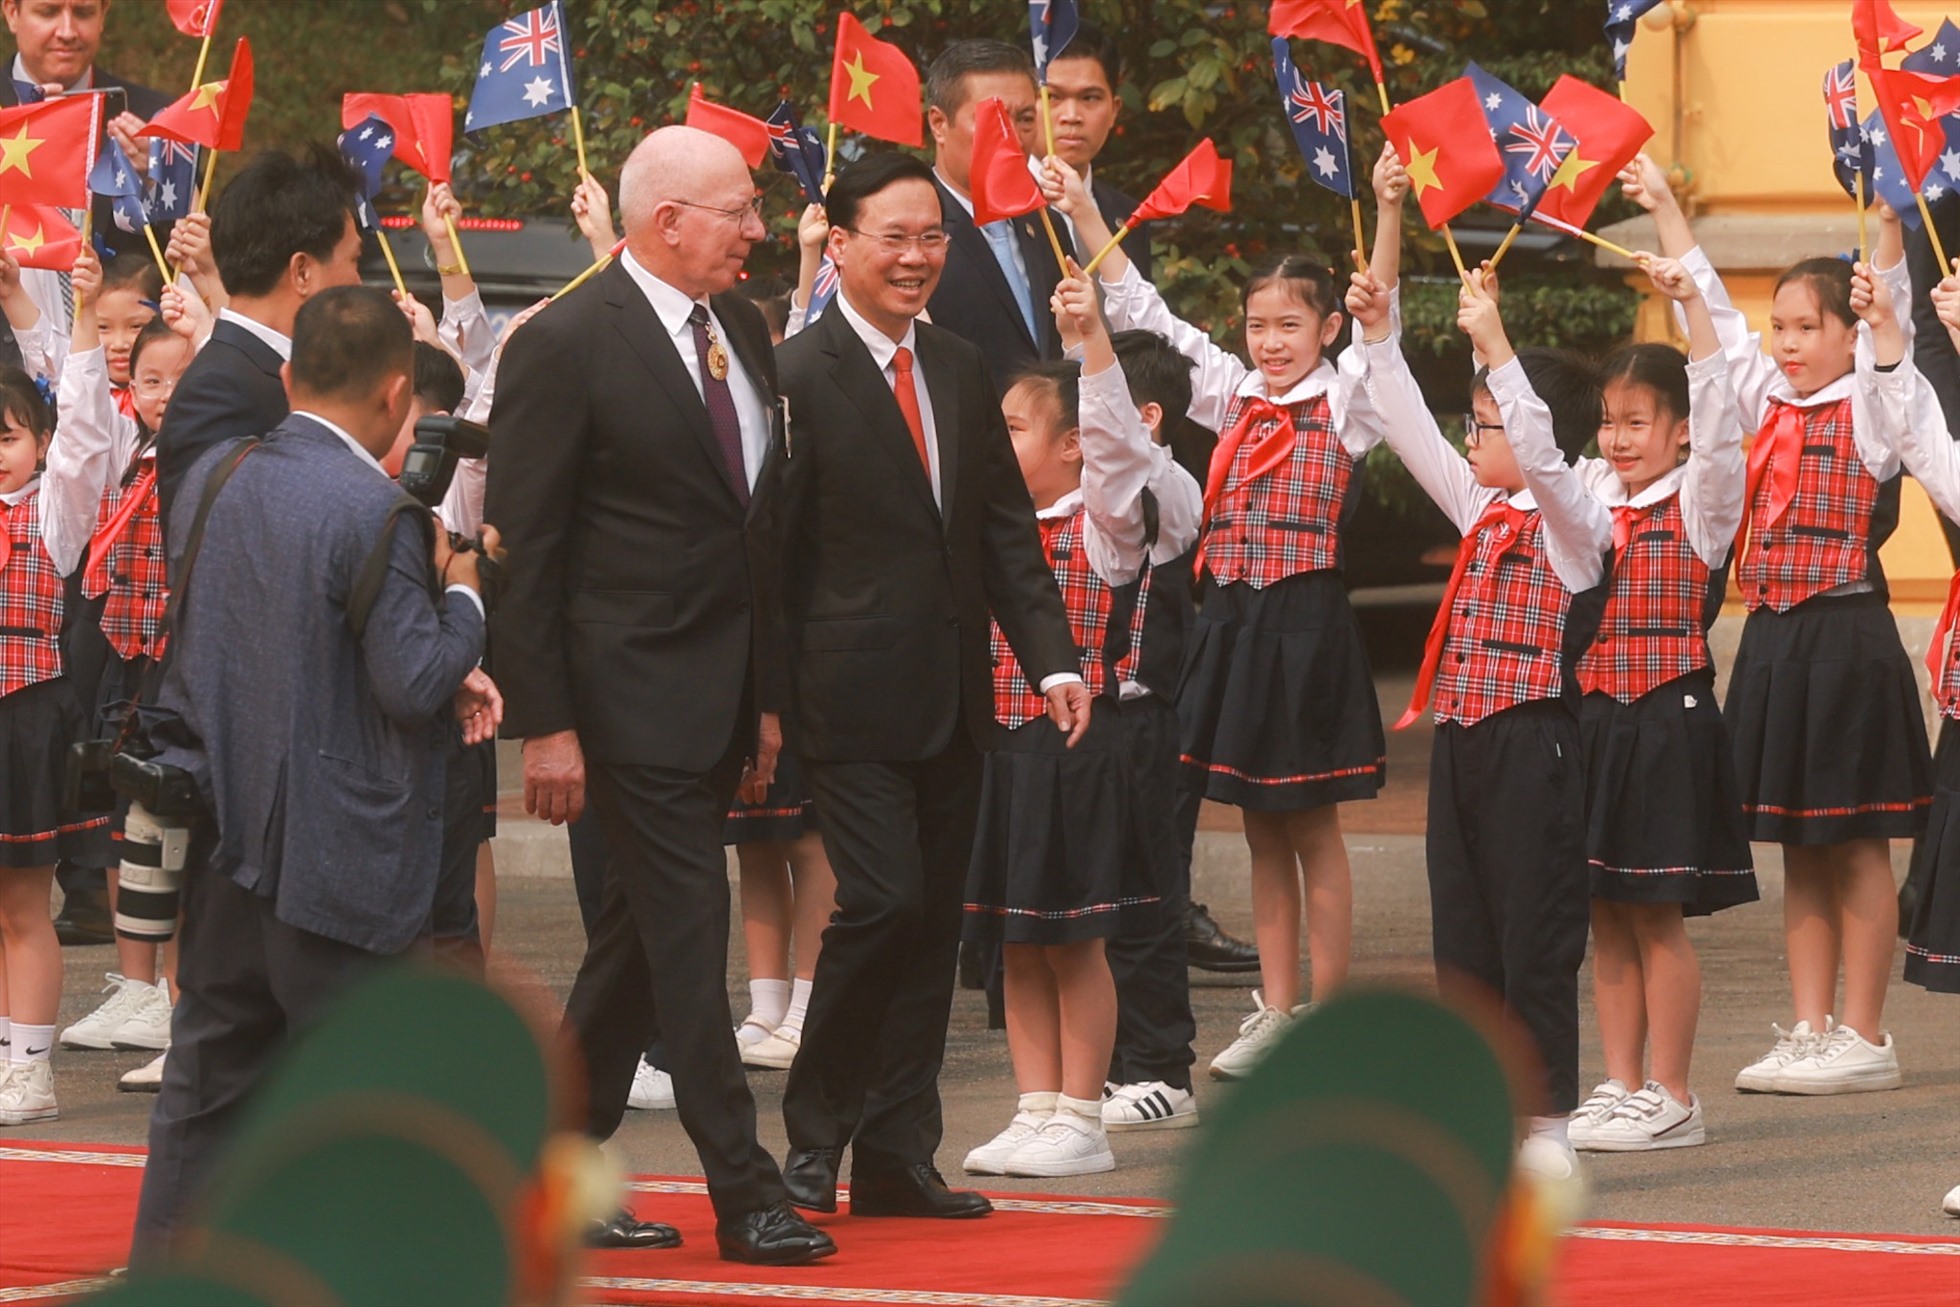 Chuyến thăm Việt Nam của Toàn quyền Australia David Hurley và Phu nhân diễn ra từ ngày 3 đến ngày 6.4 theo lời mời của Chủ tịch nước Võ Văn Thưởng. Ảnh: Hải Nguyễn